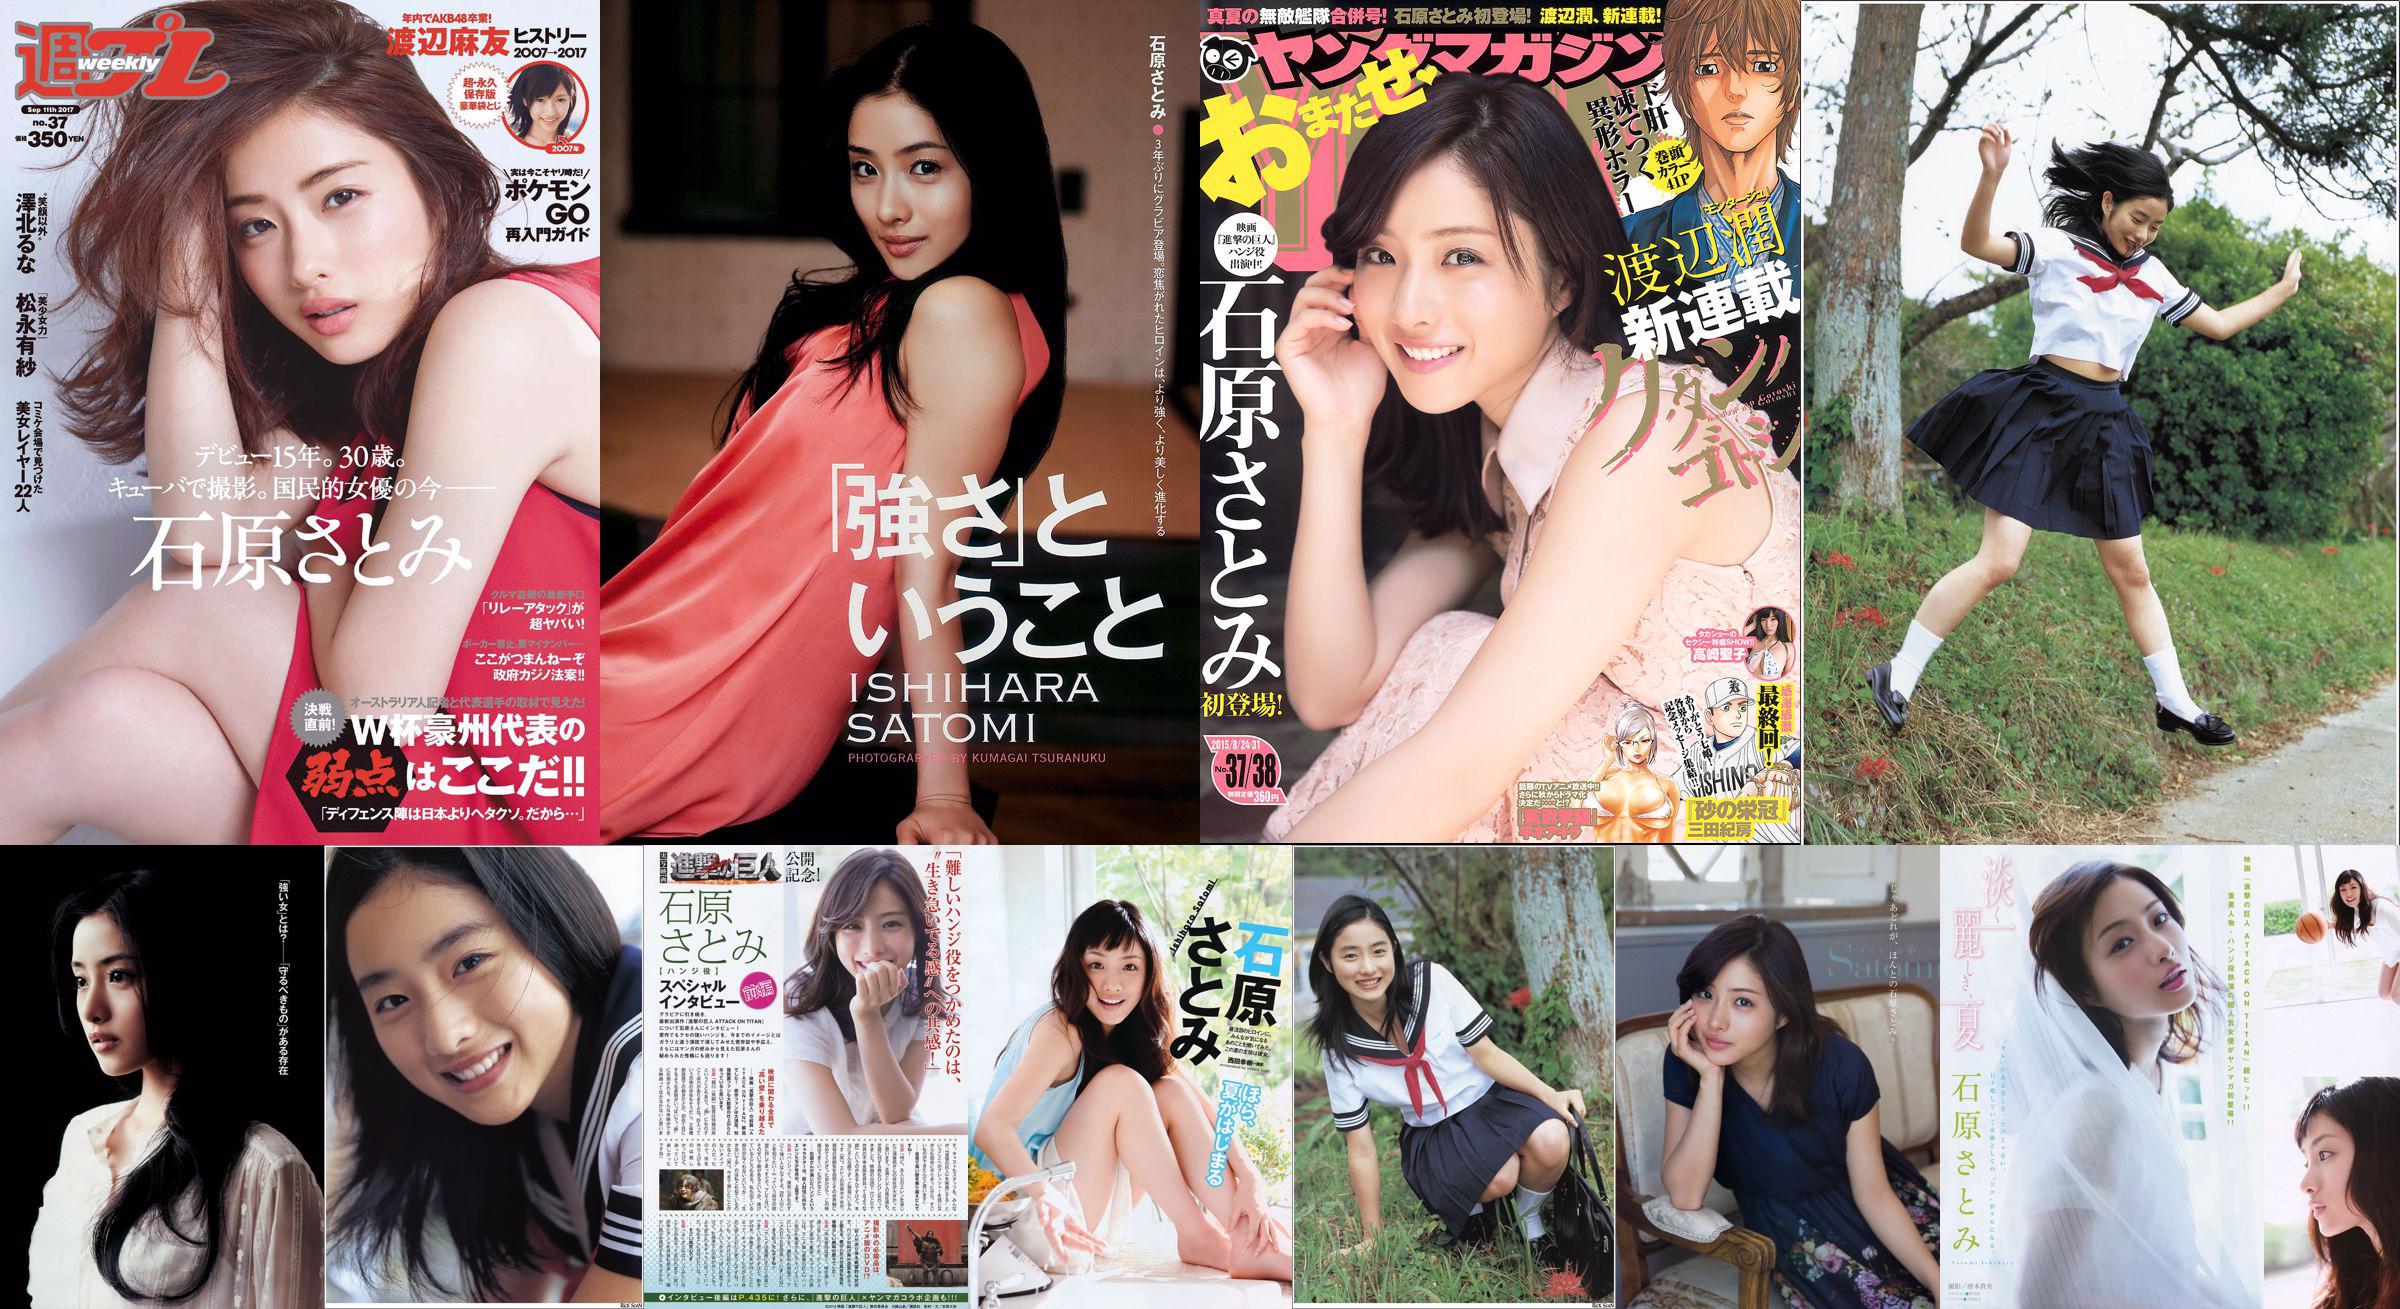 [Young Magazine] Ishihara さとみ Takasaki Seiko 2015 No.37-38 Photo Magazine No.a61619 Page 4